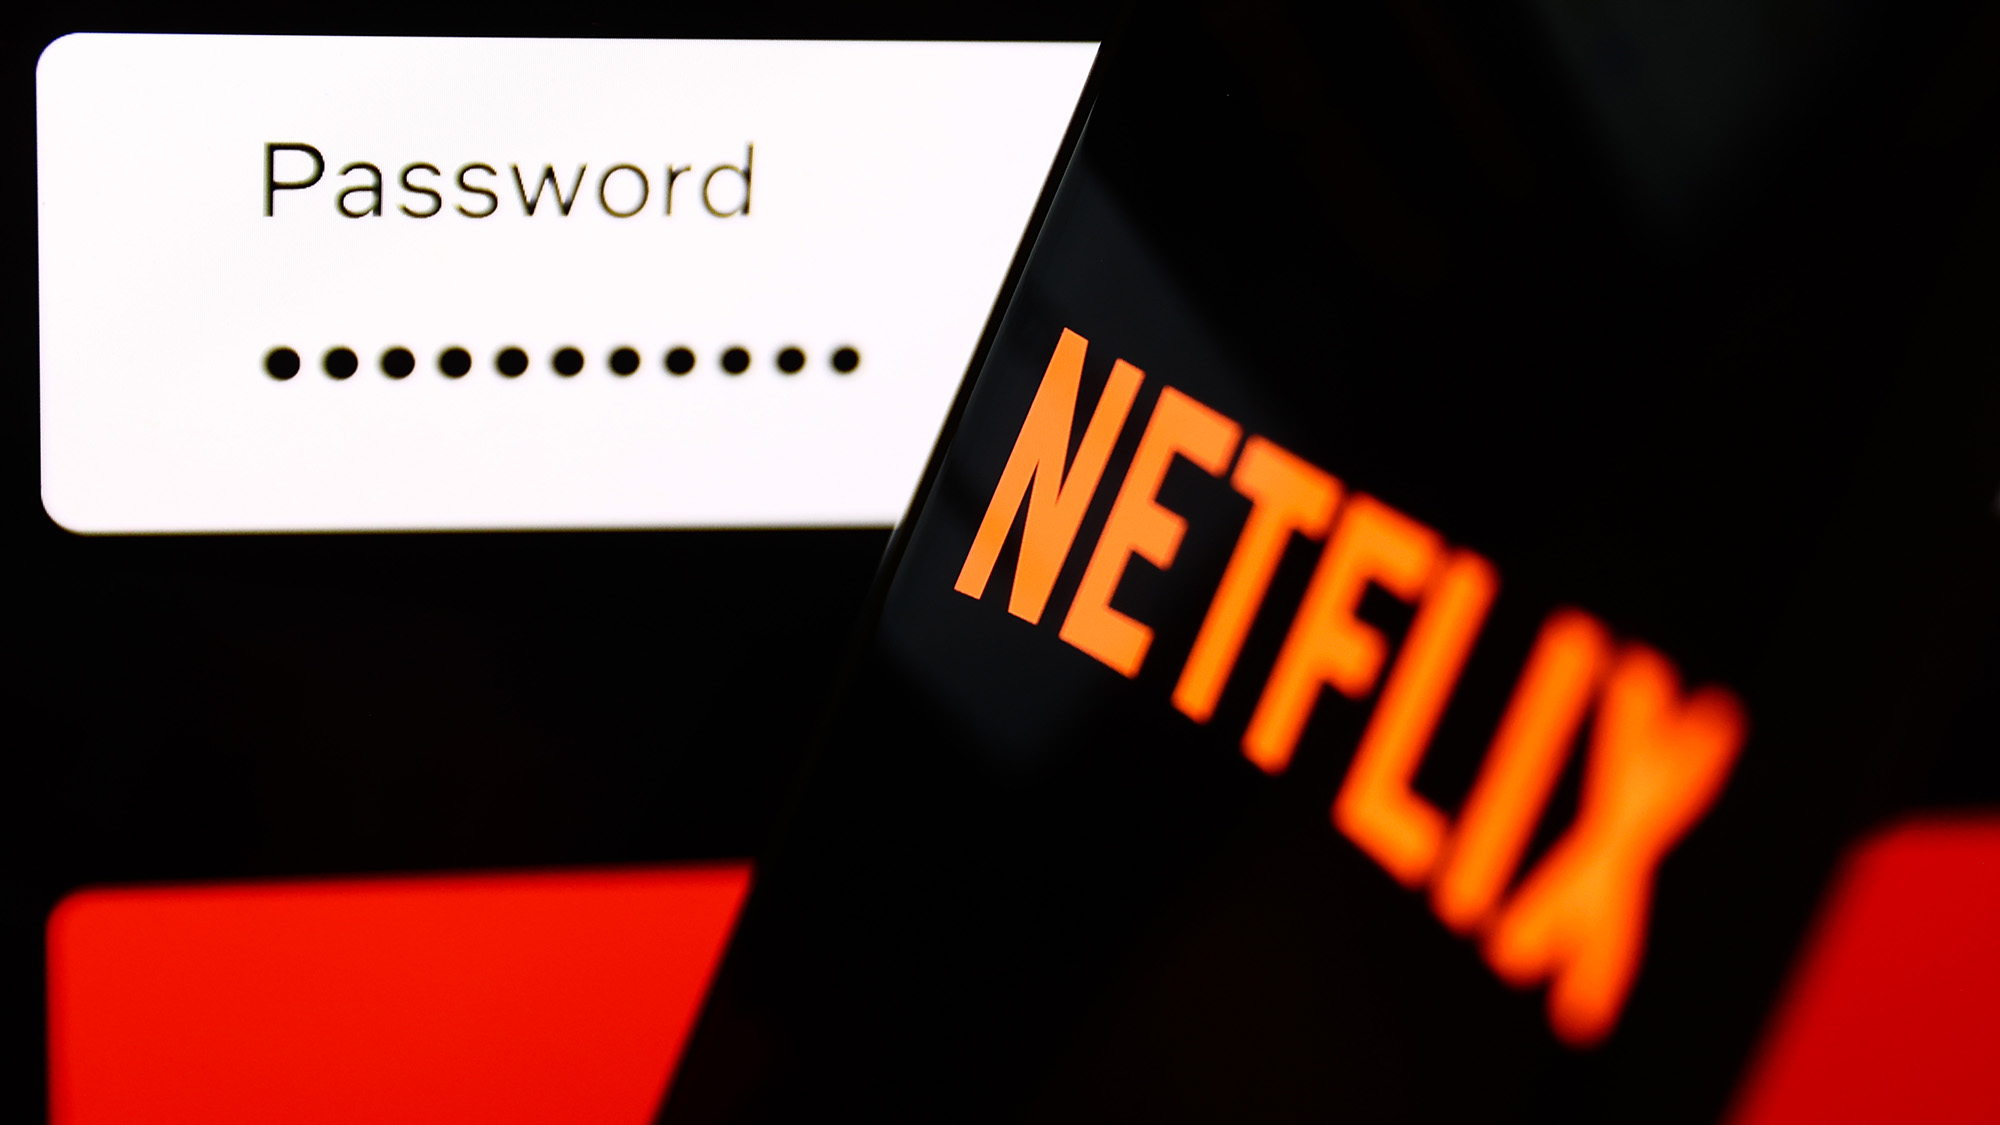 (R nach L) Das Netflix-Logo auf einem Telefon vor einem Passwortfeld auf einem Bildschirm.